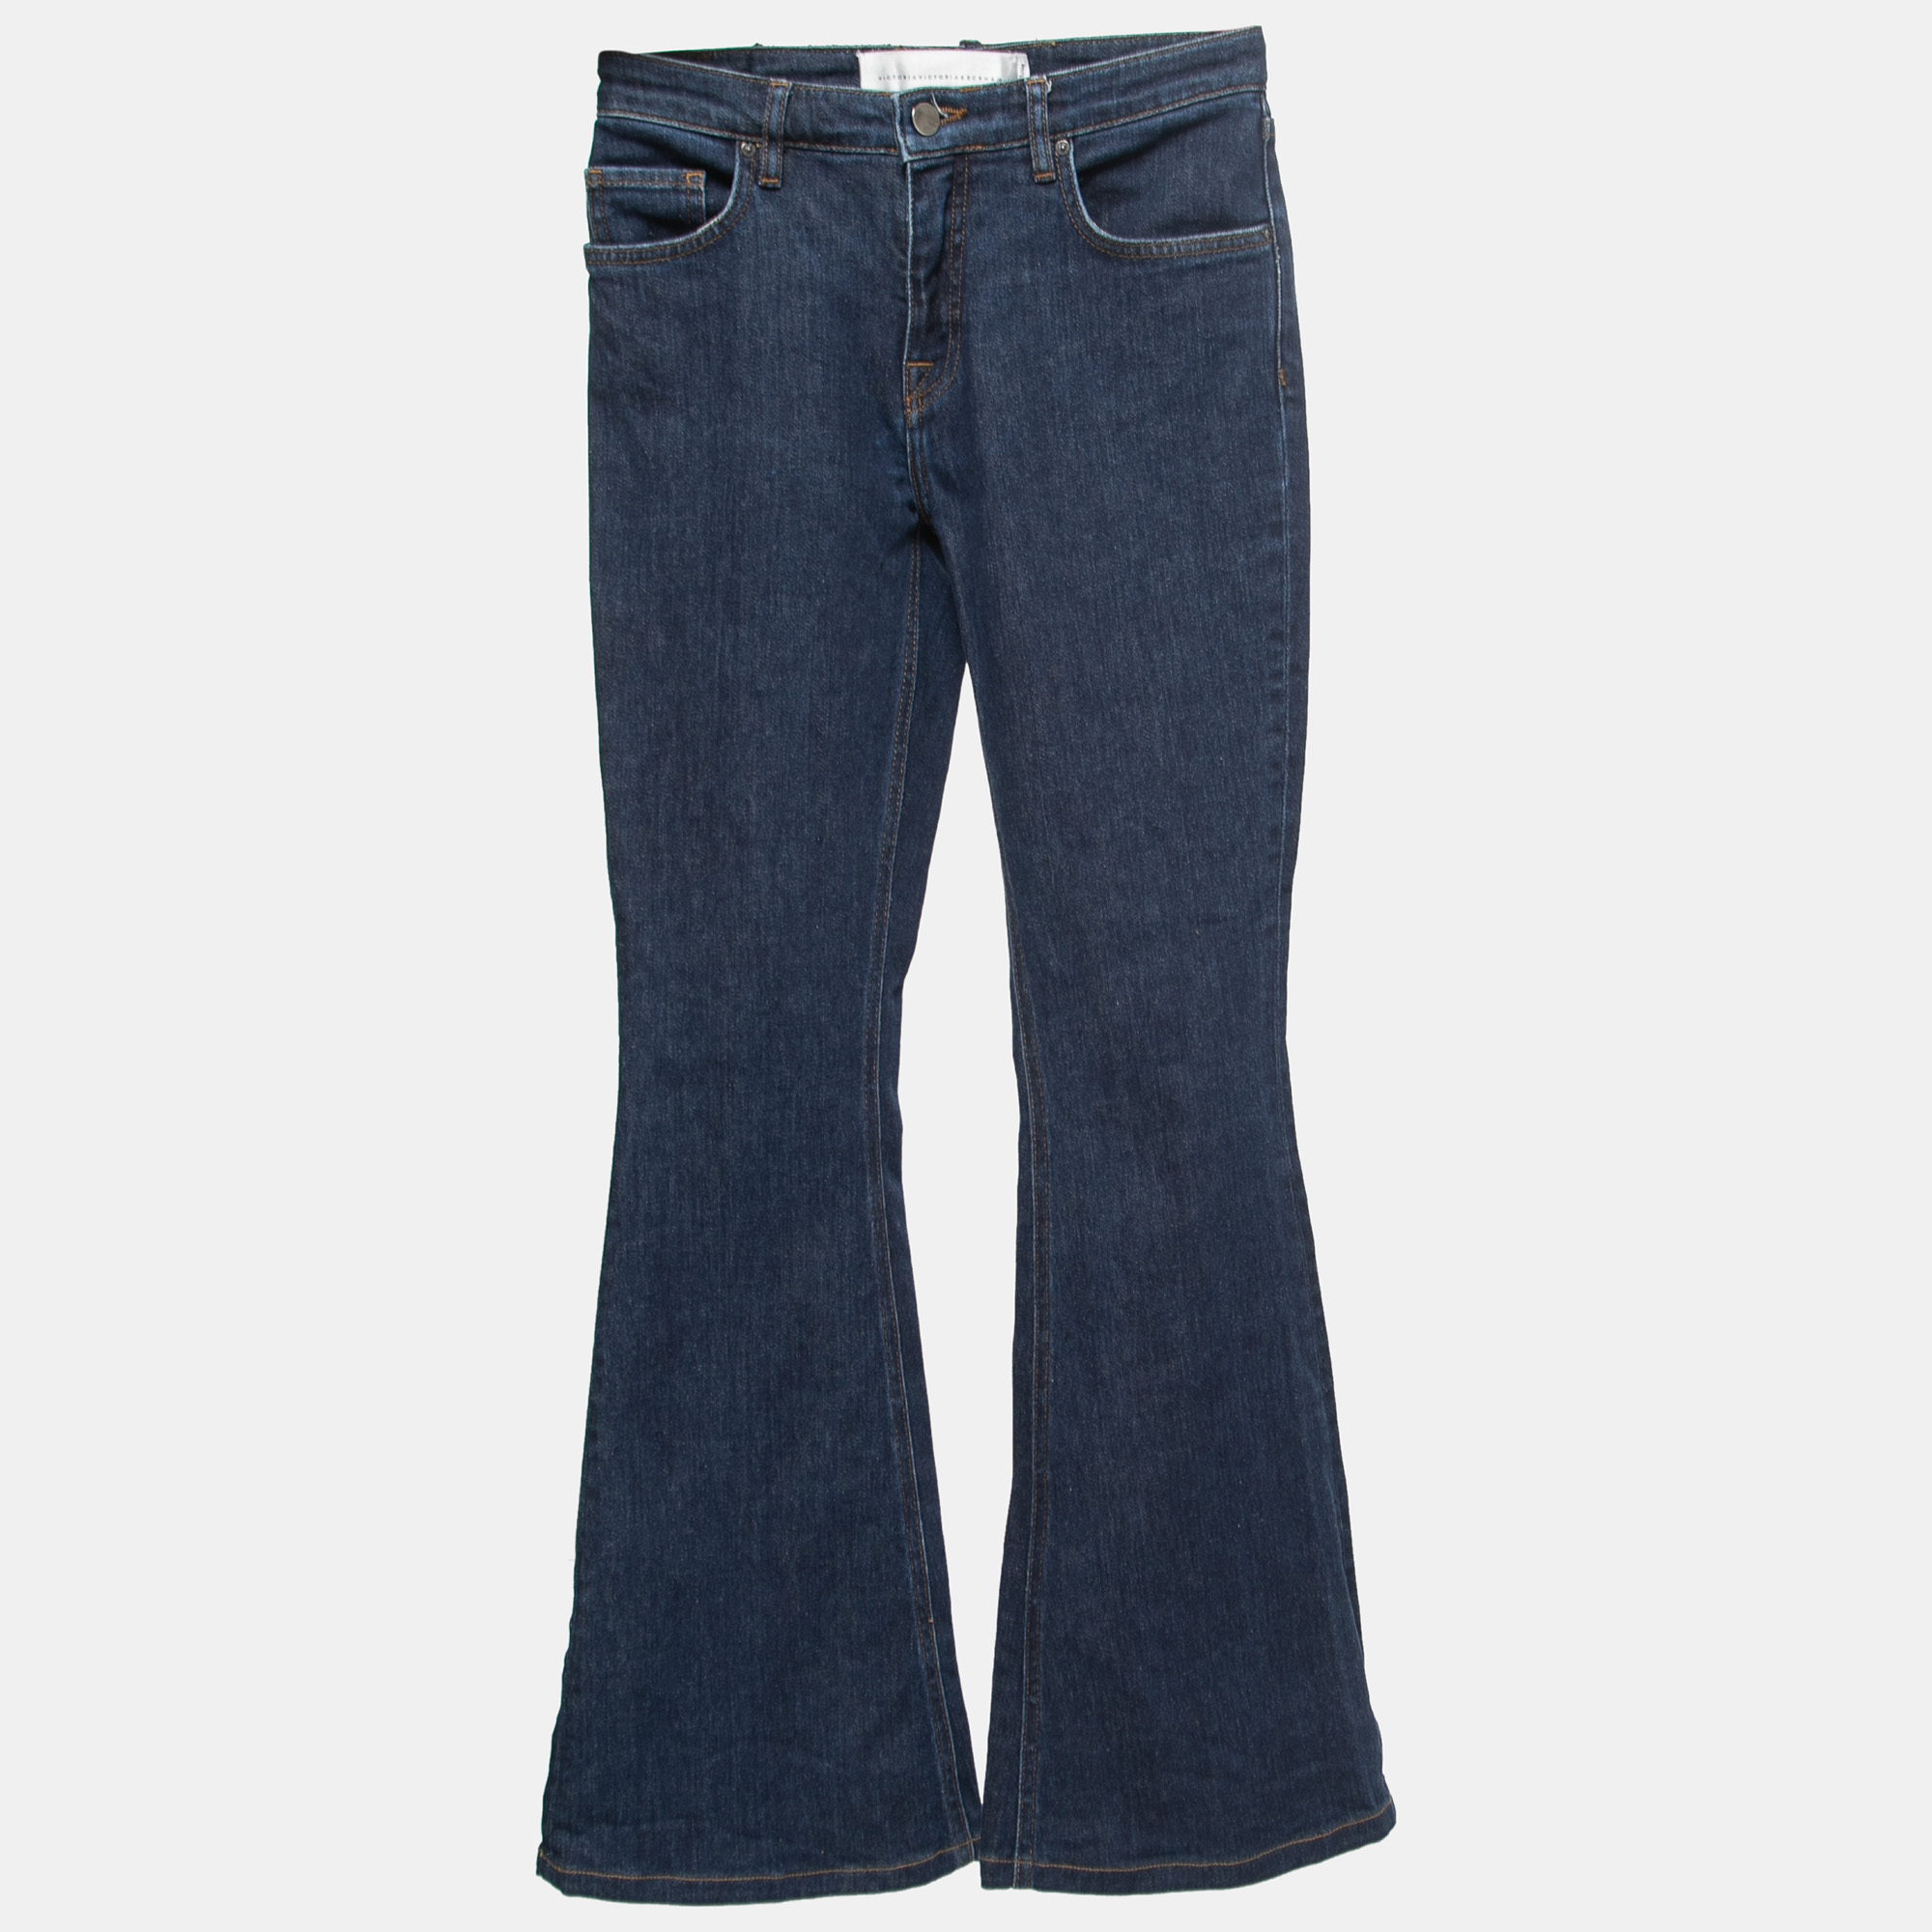 

Victoria Victoria Beckham Blue Denim Flared Jeans S Waist 25"